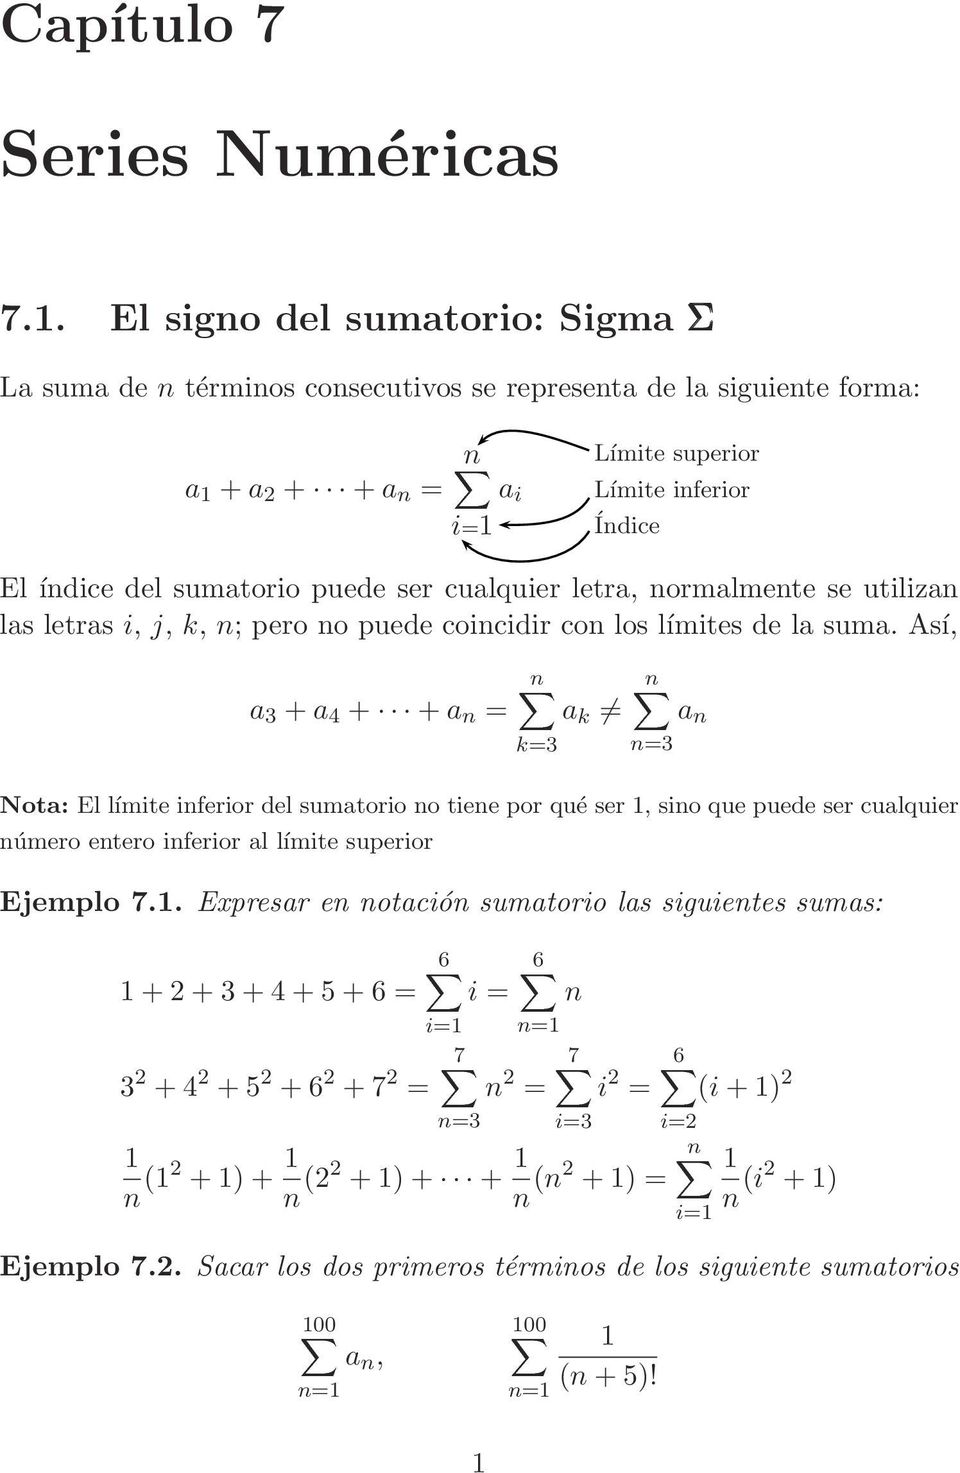 sumatorio puede ser cualquier letra, ormalmete se utiliza las letras i, j, k, ; pero o puede coicidir co los límites de la suma.